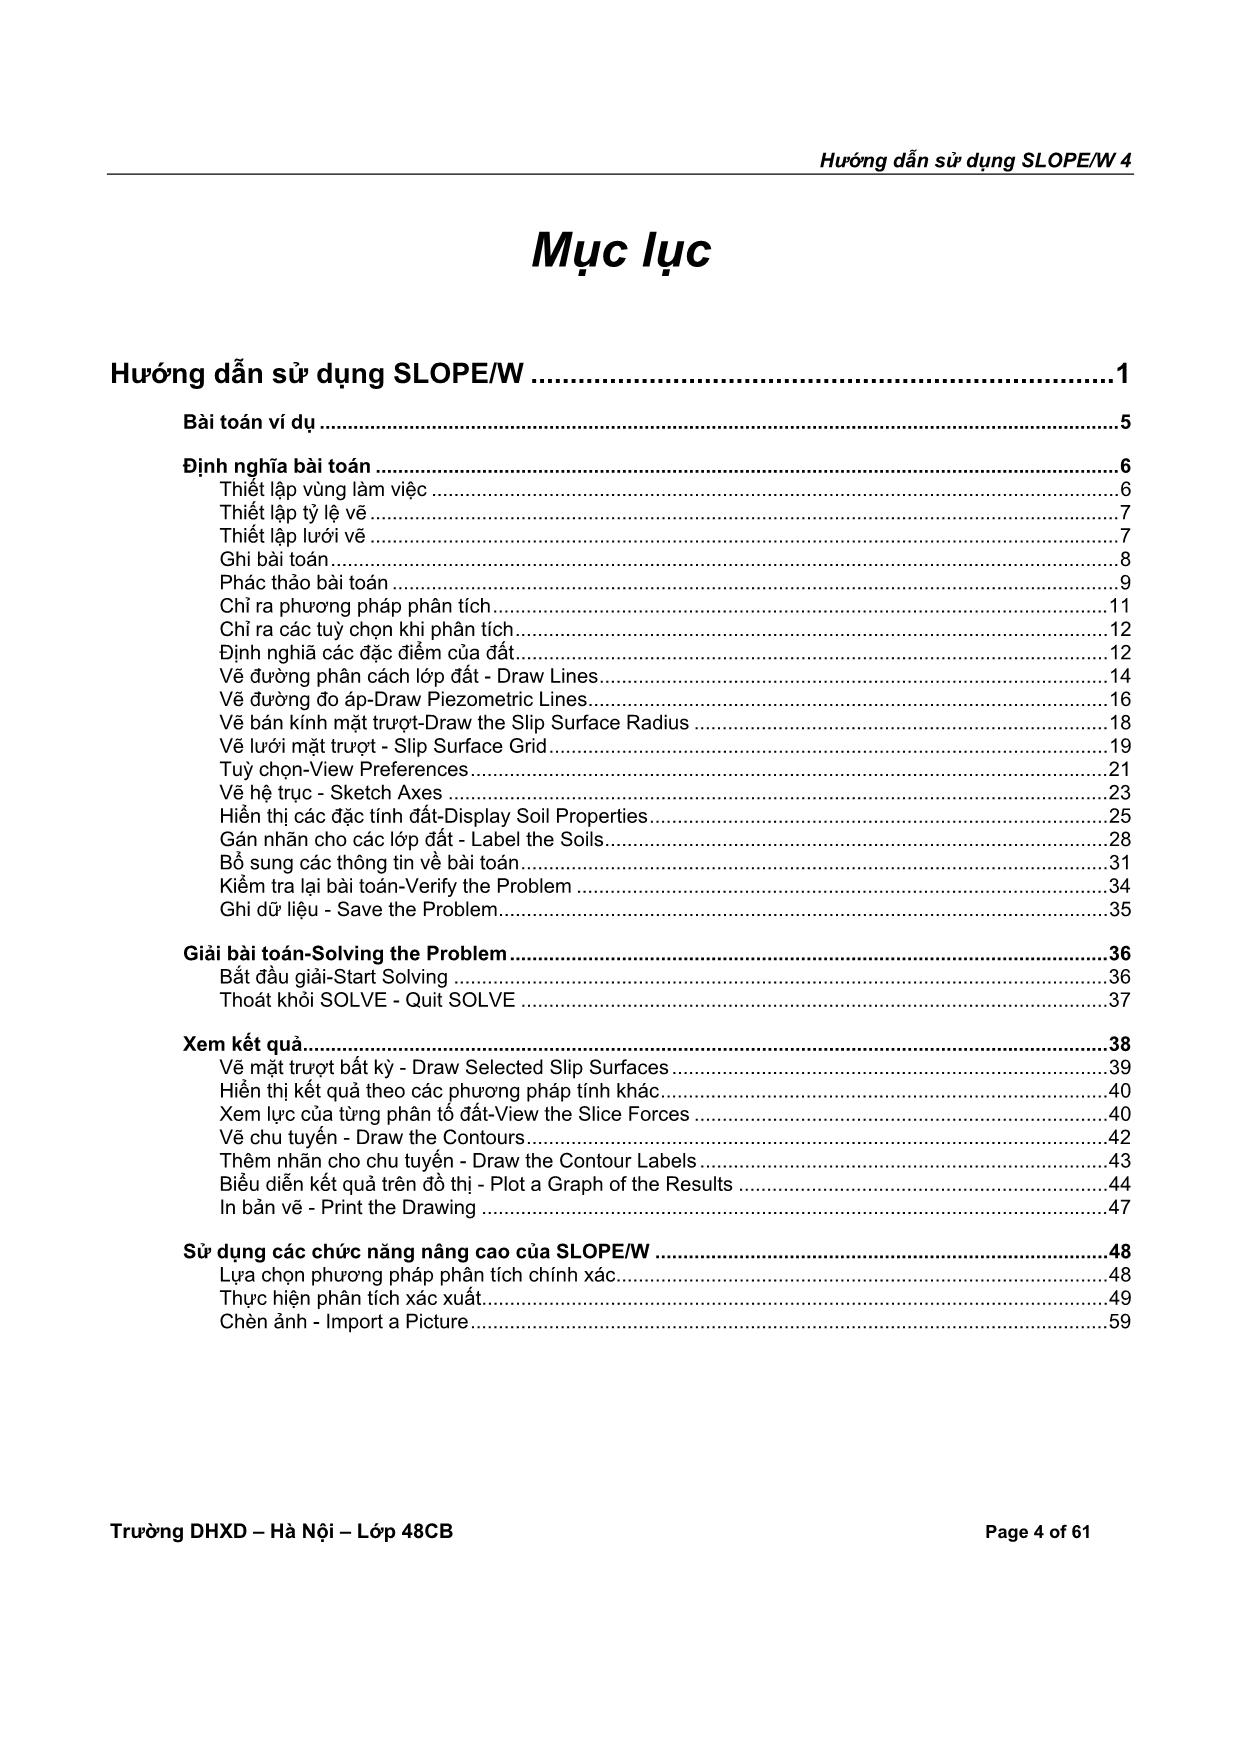 Hướng dẫn sử dụng phần mềm tính ổn định mái dốc Slope/W trang 4